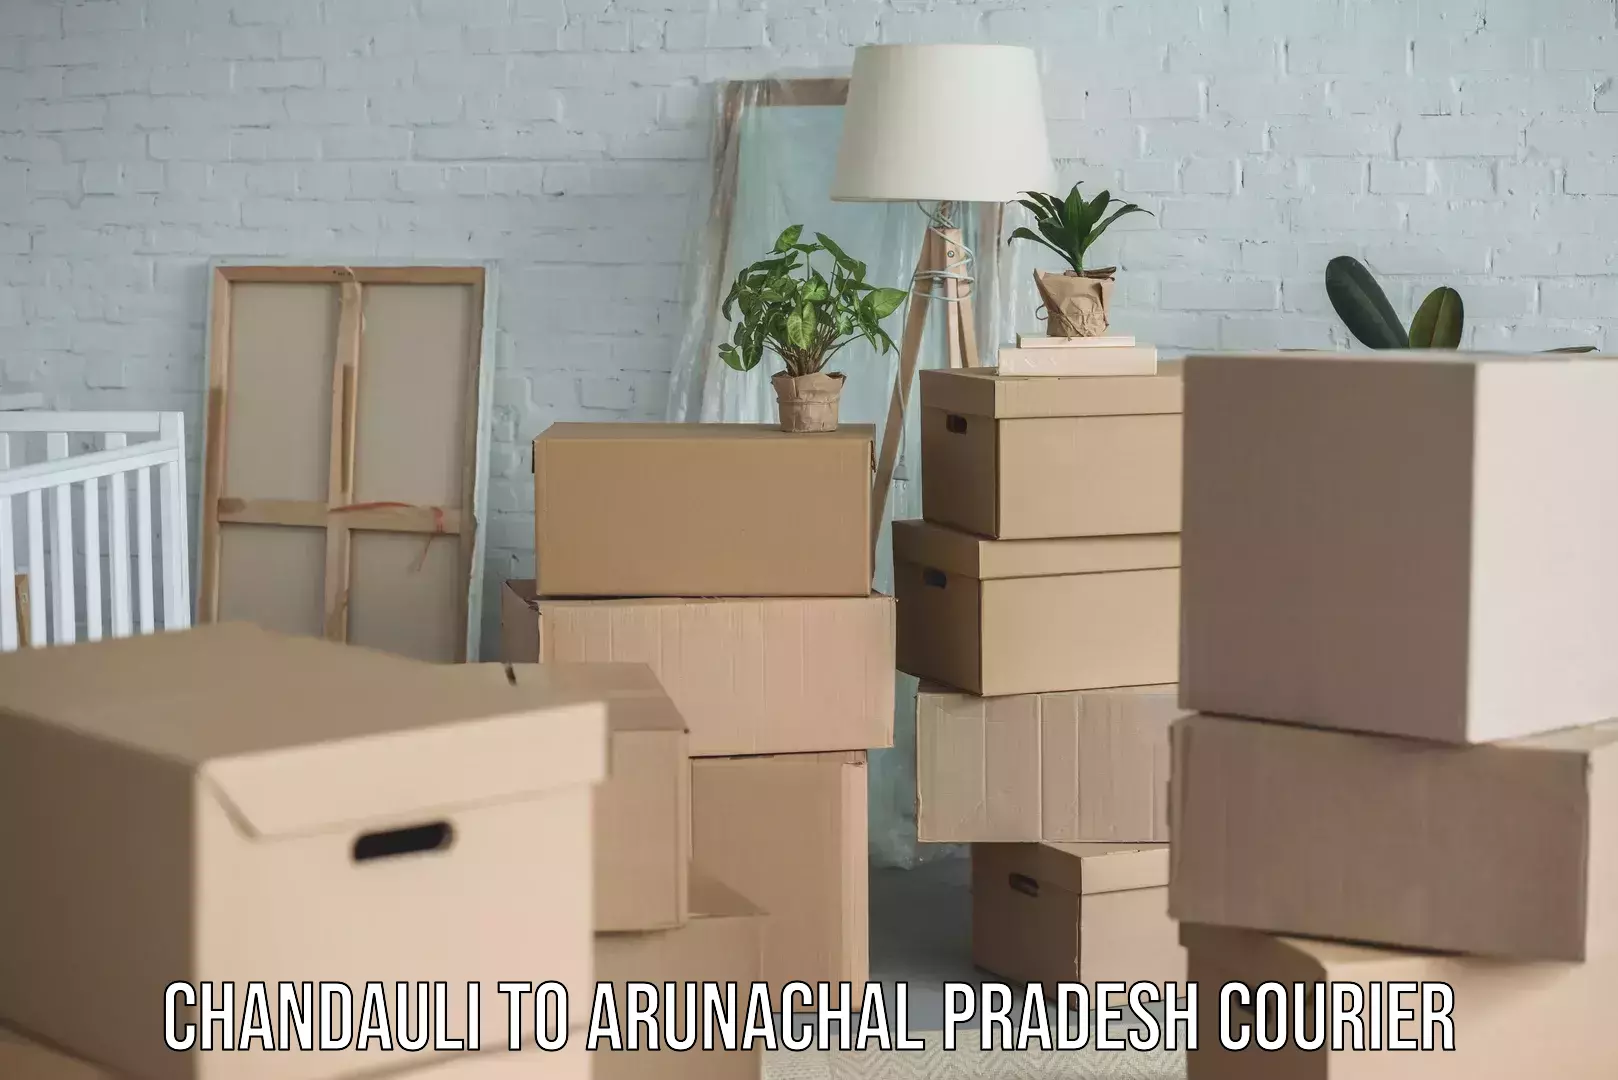 Cargo courier service Chandauli to Arunachal Pradesh